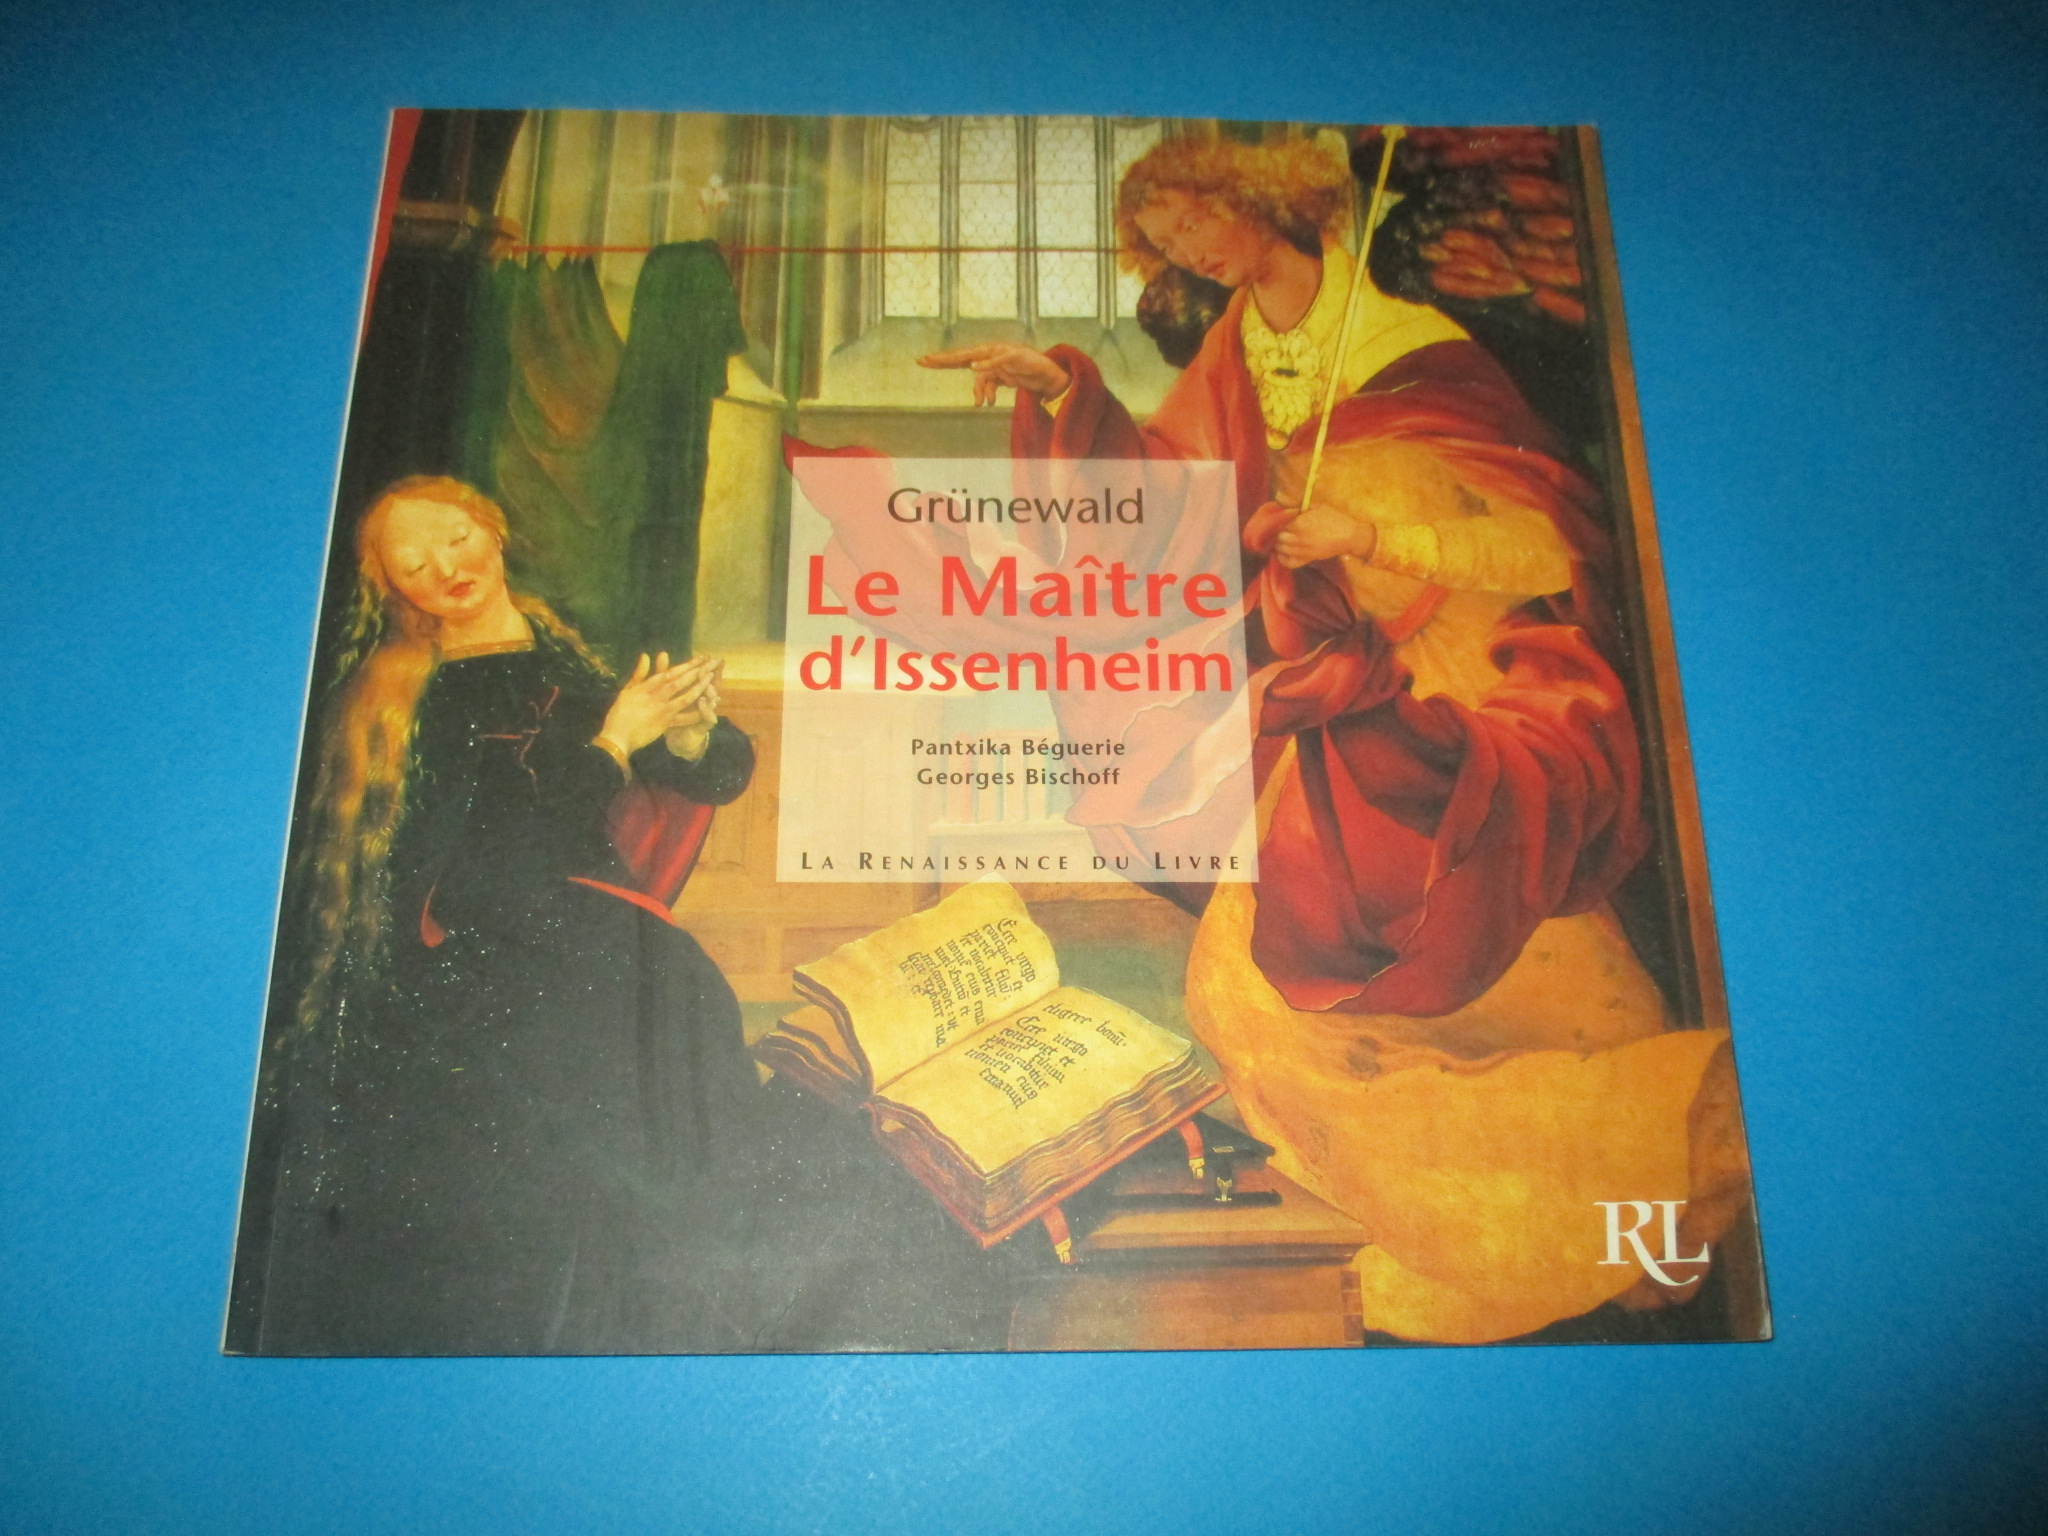 Grunewald Le Maître d\'Issenheim, Pantxika Béguerie & Georges Bischoff, Retable, Renaissance du Livre